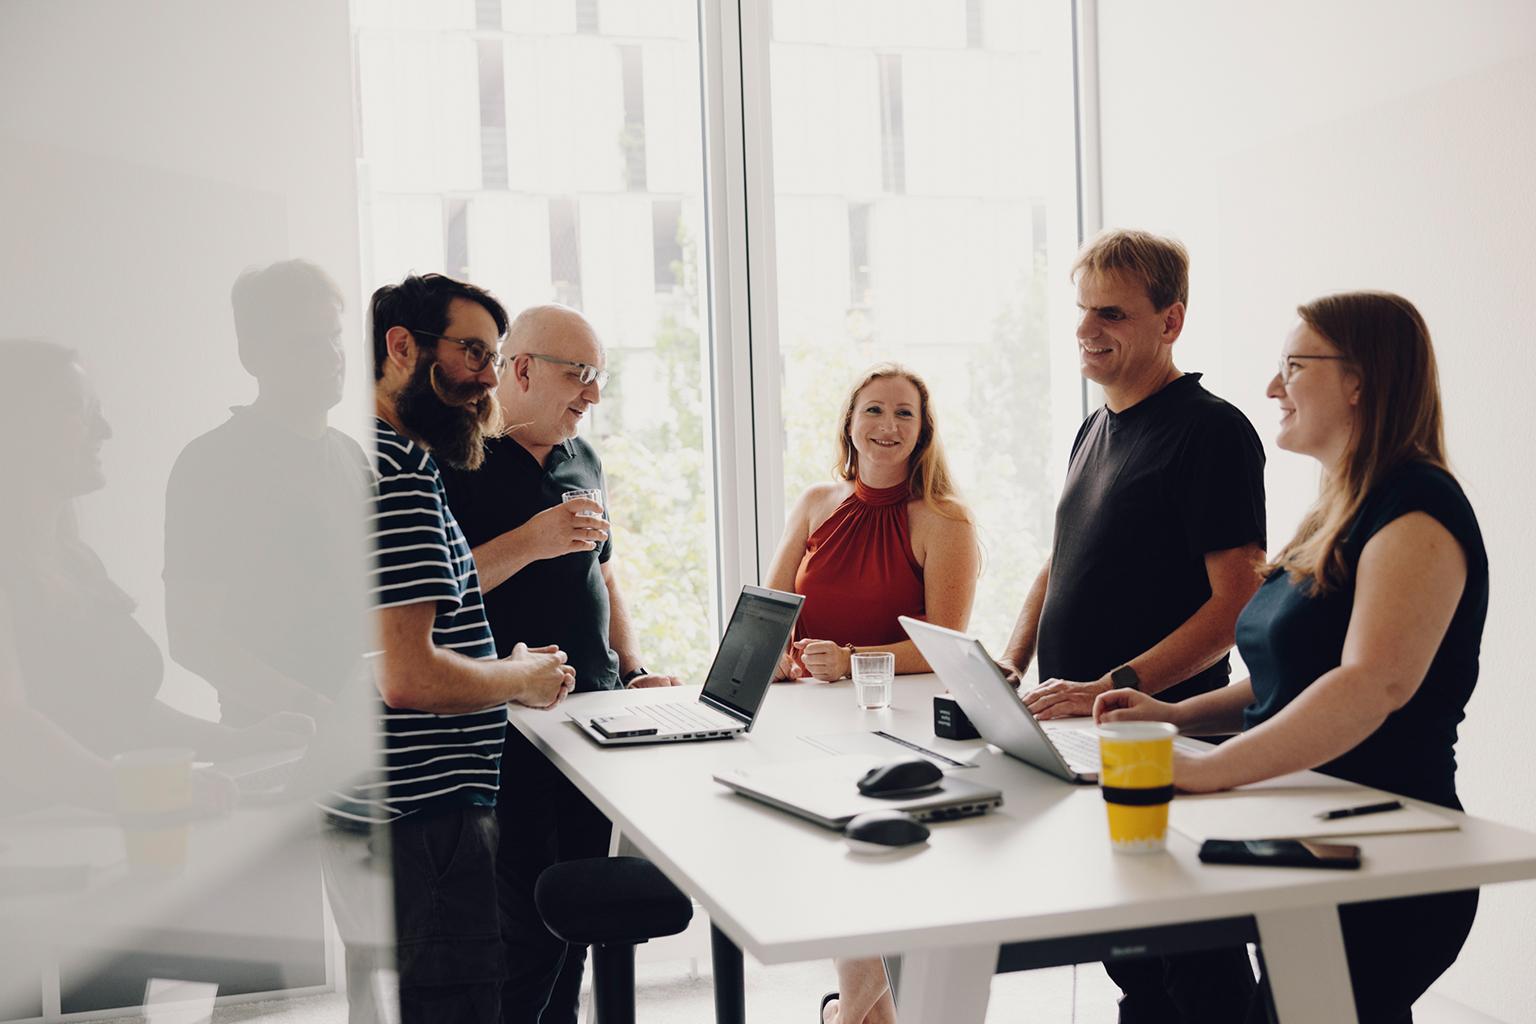 Das Bild zeigt fünf Personen in einem modernen Büroraum, die um einen Tisch stehen und diskutieren